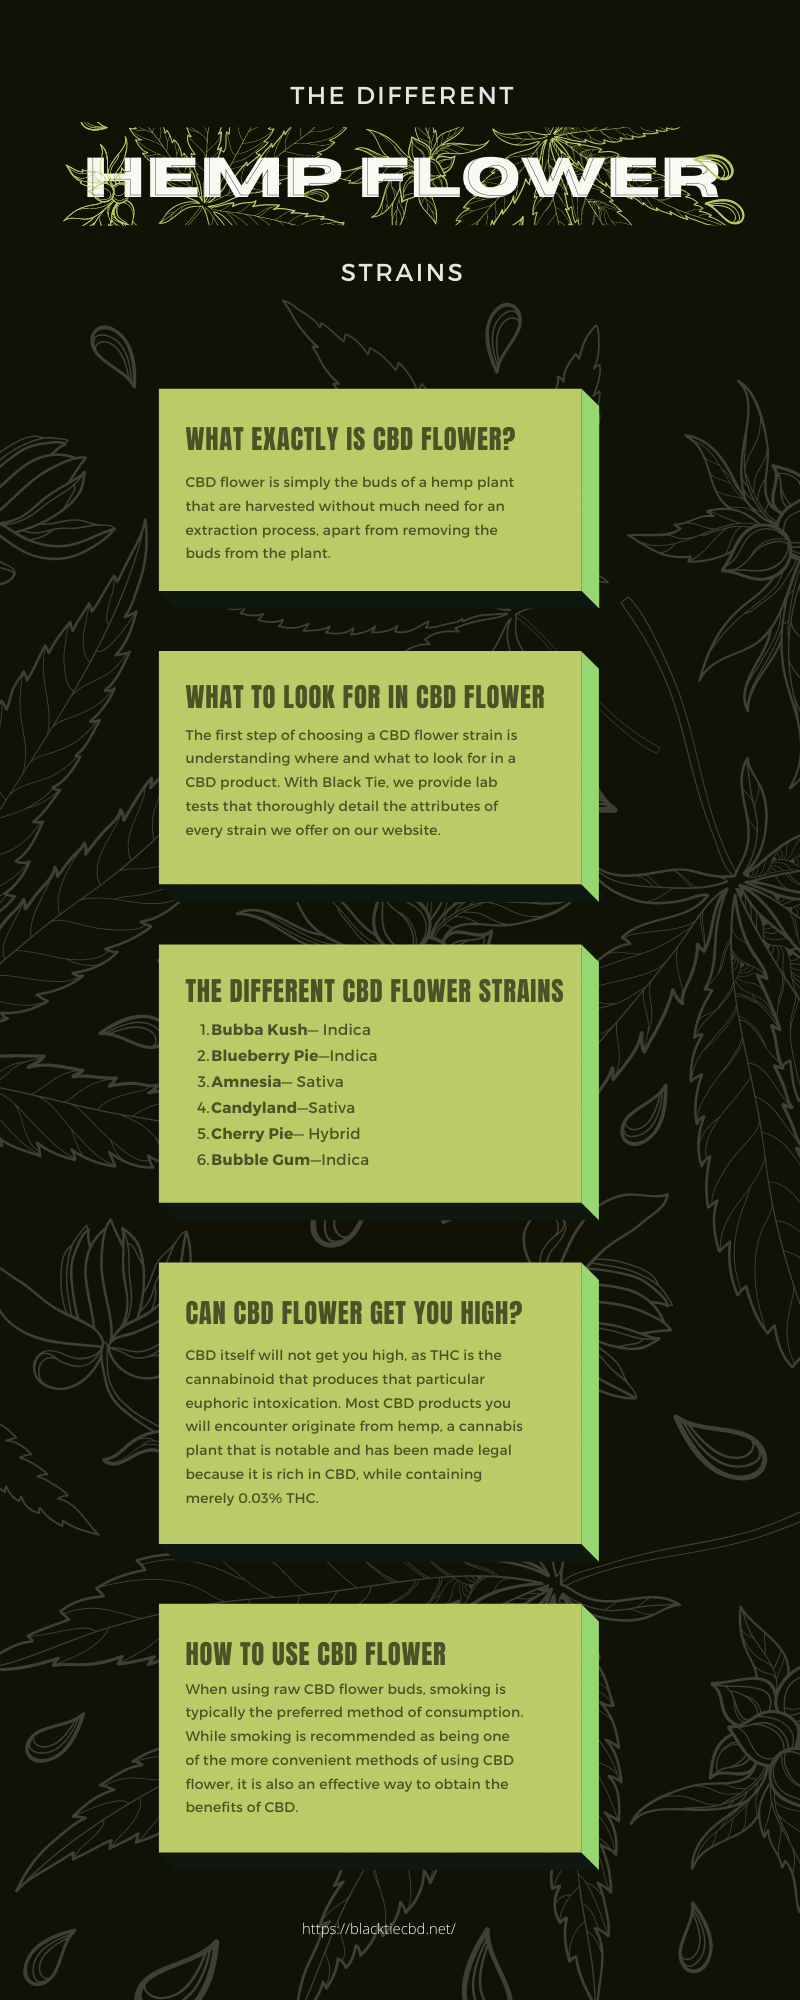 The Different Hemp Flower Strains